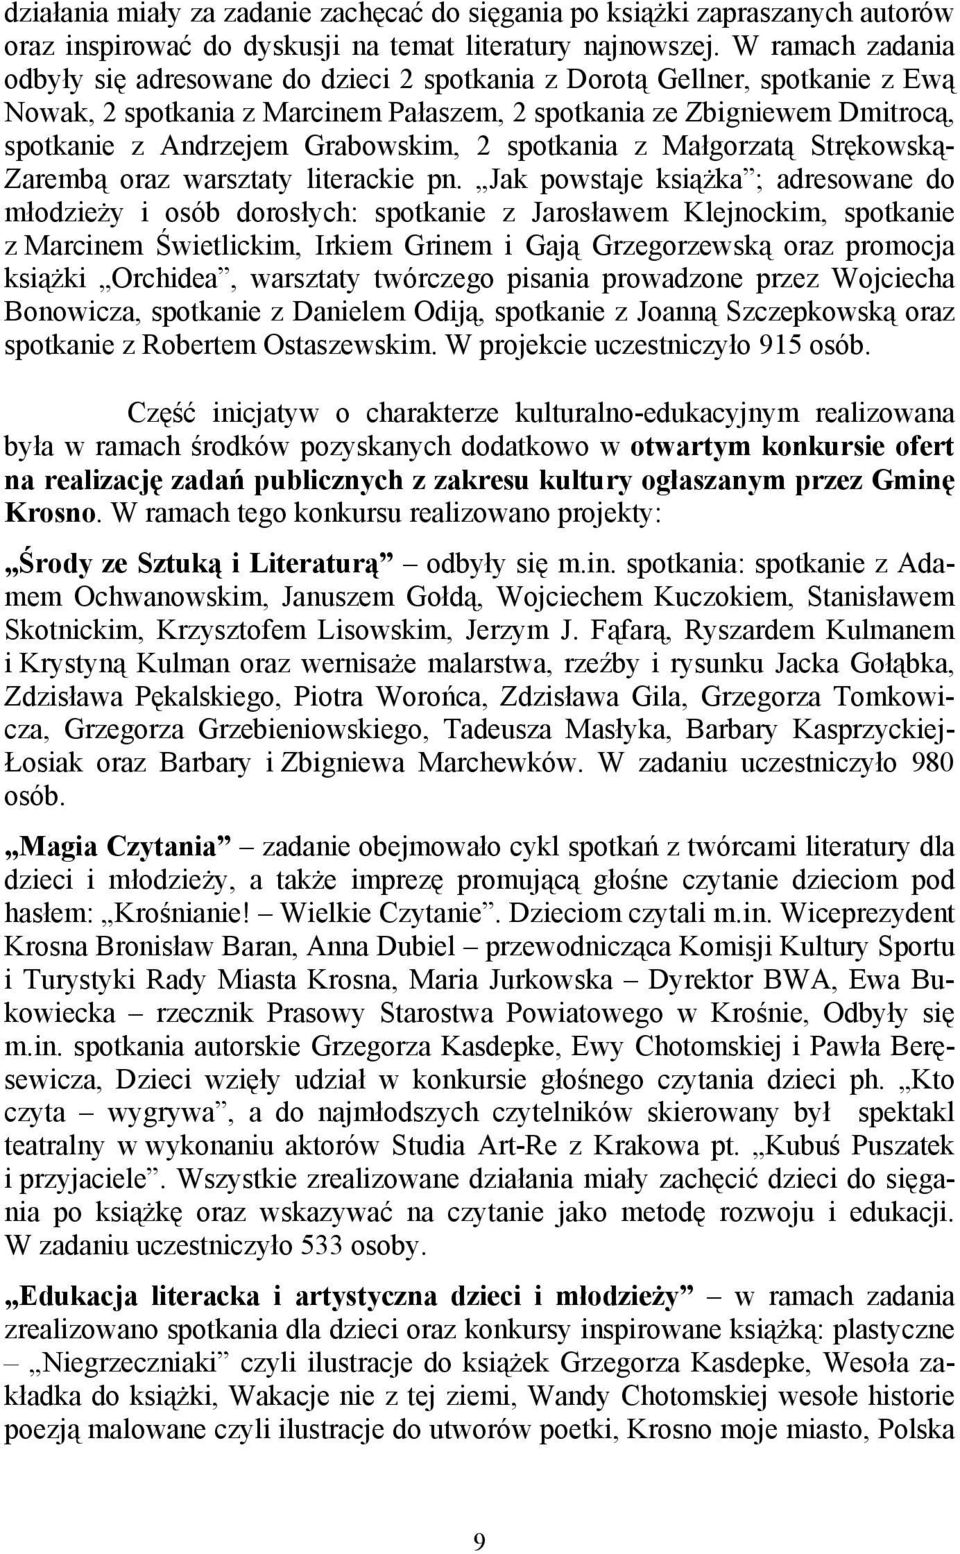 Grabowskim, 2 spotkania z Małgorzatą Strękowską- Zarembą oraz warsztaty literackie pn.